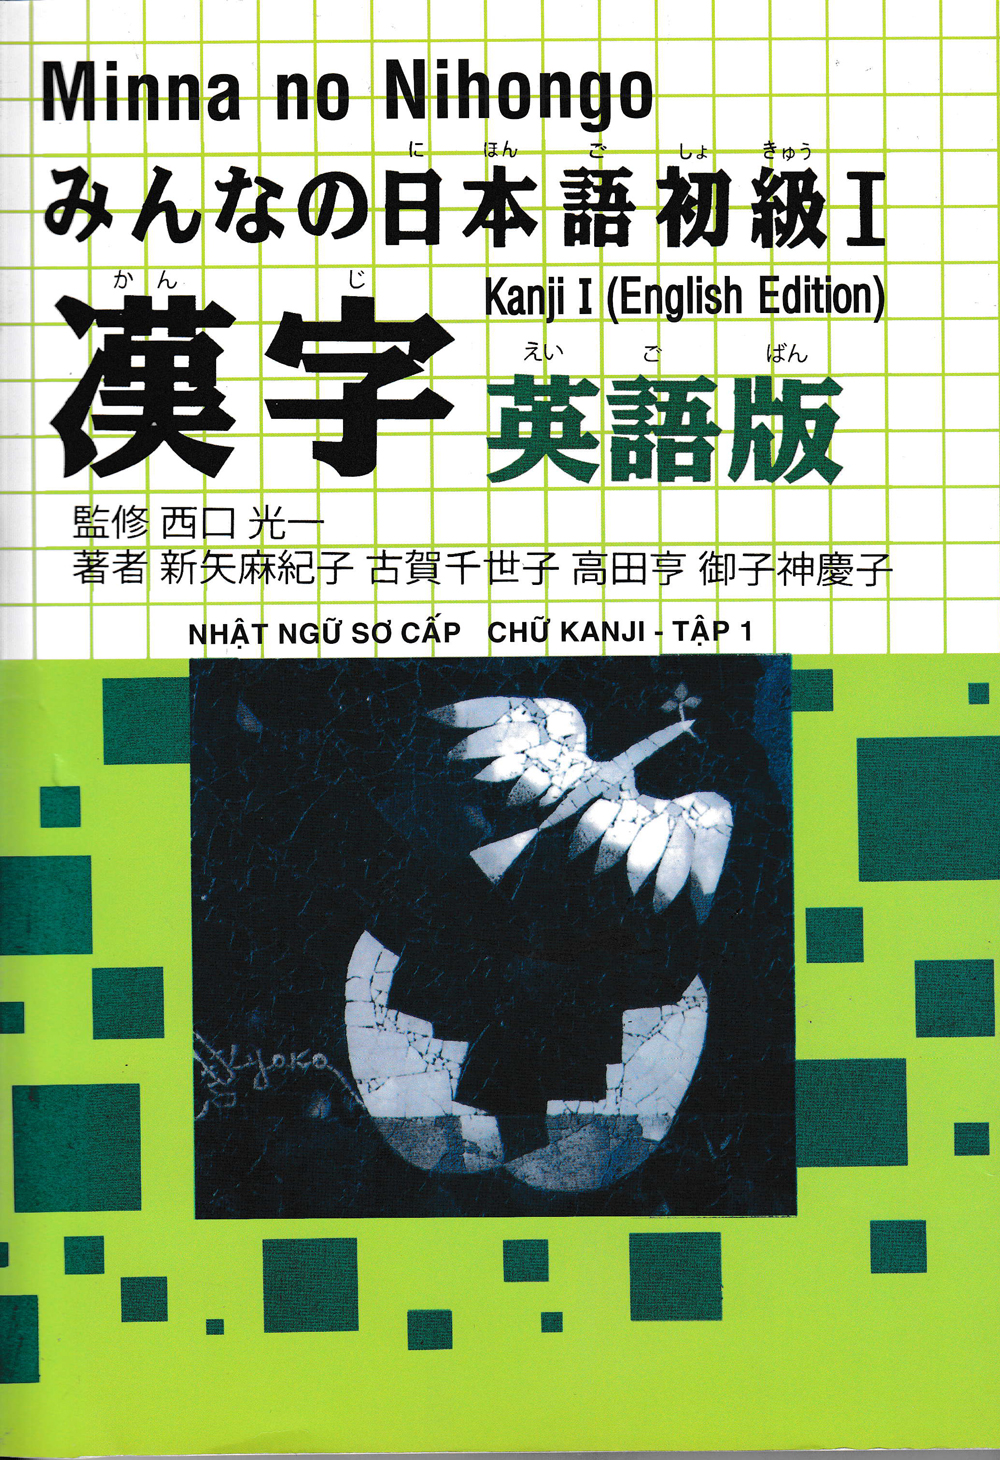 Minna no Nihongo - Nhật Ngữ Sơ Cấp Chữ Kanji Tập 1